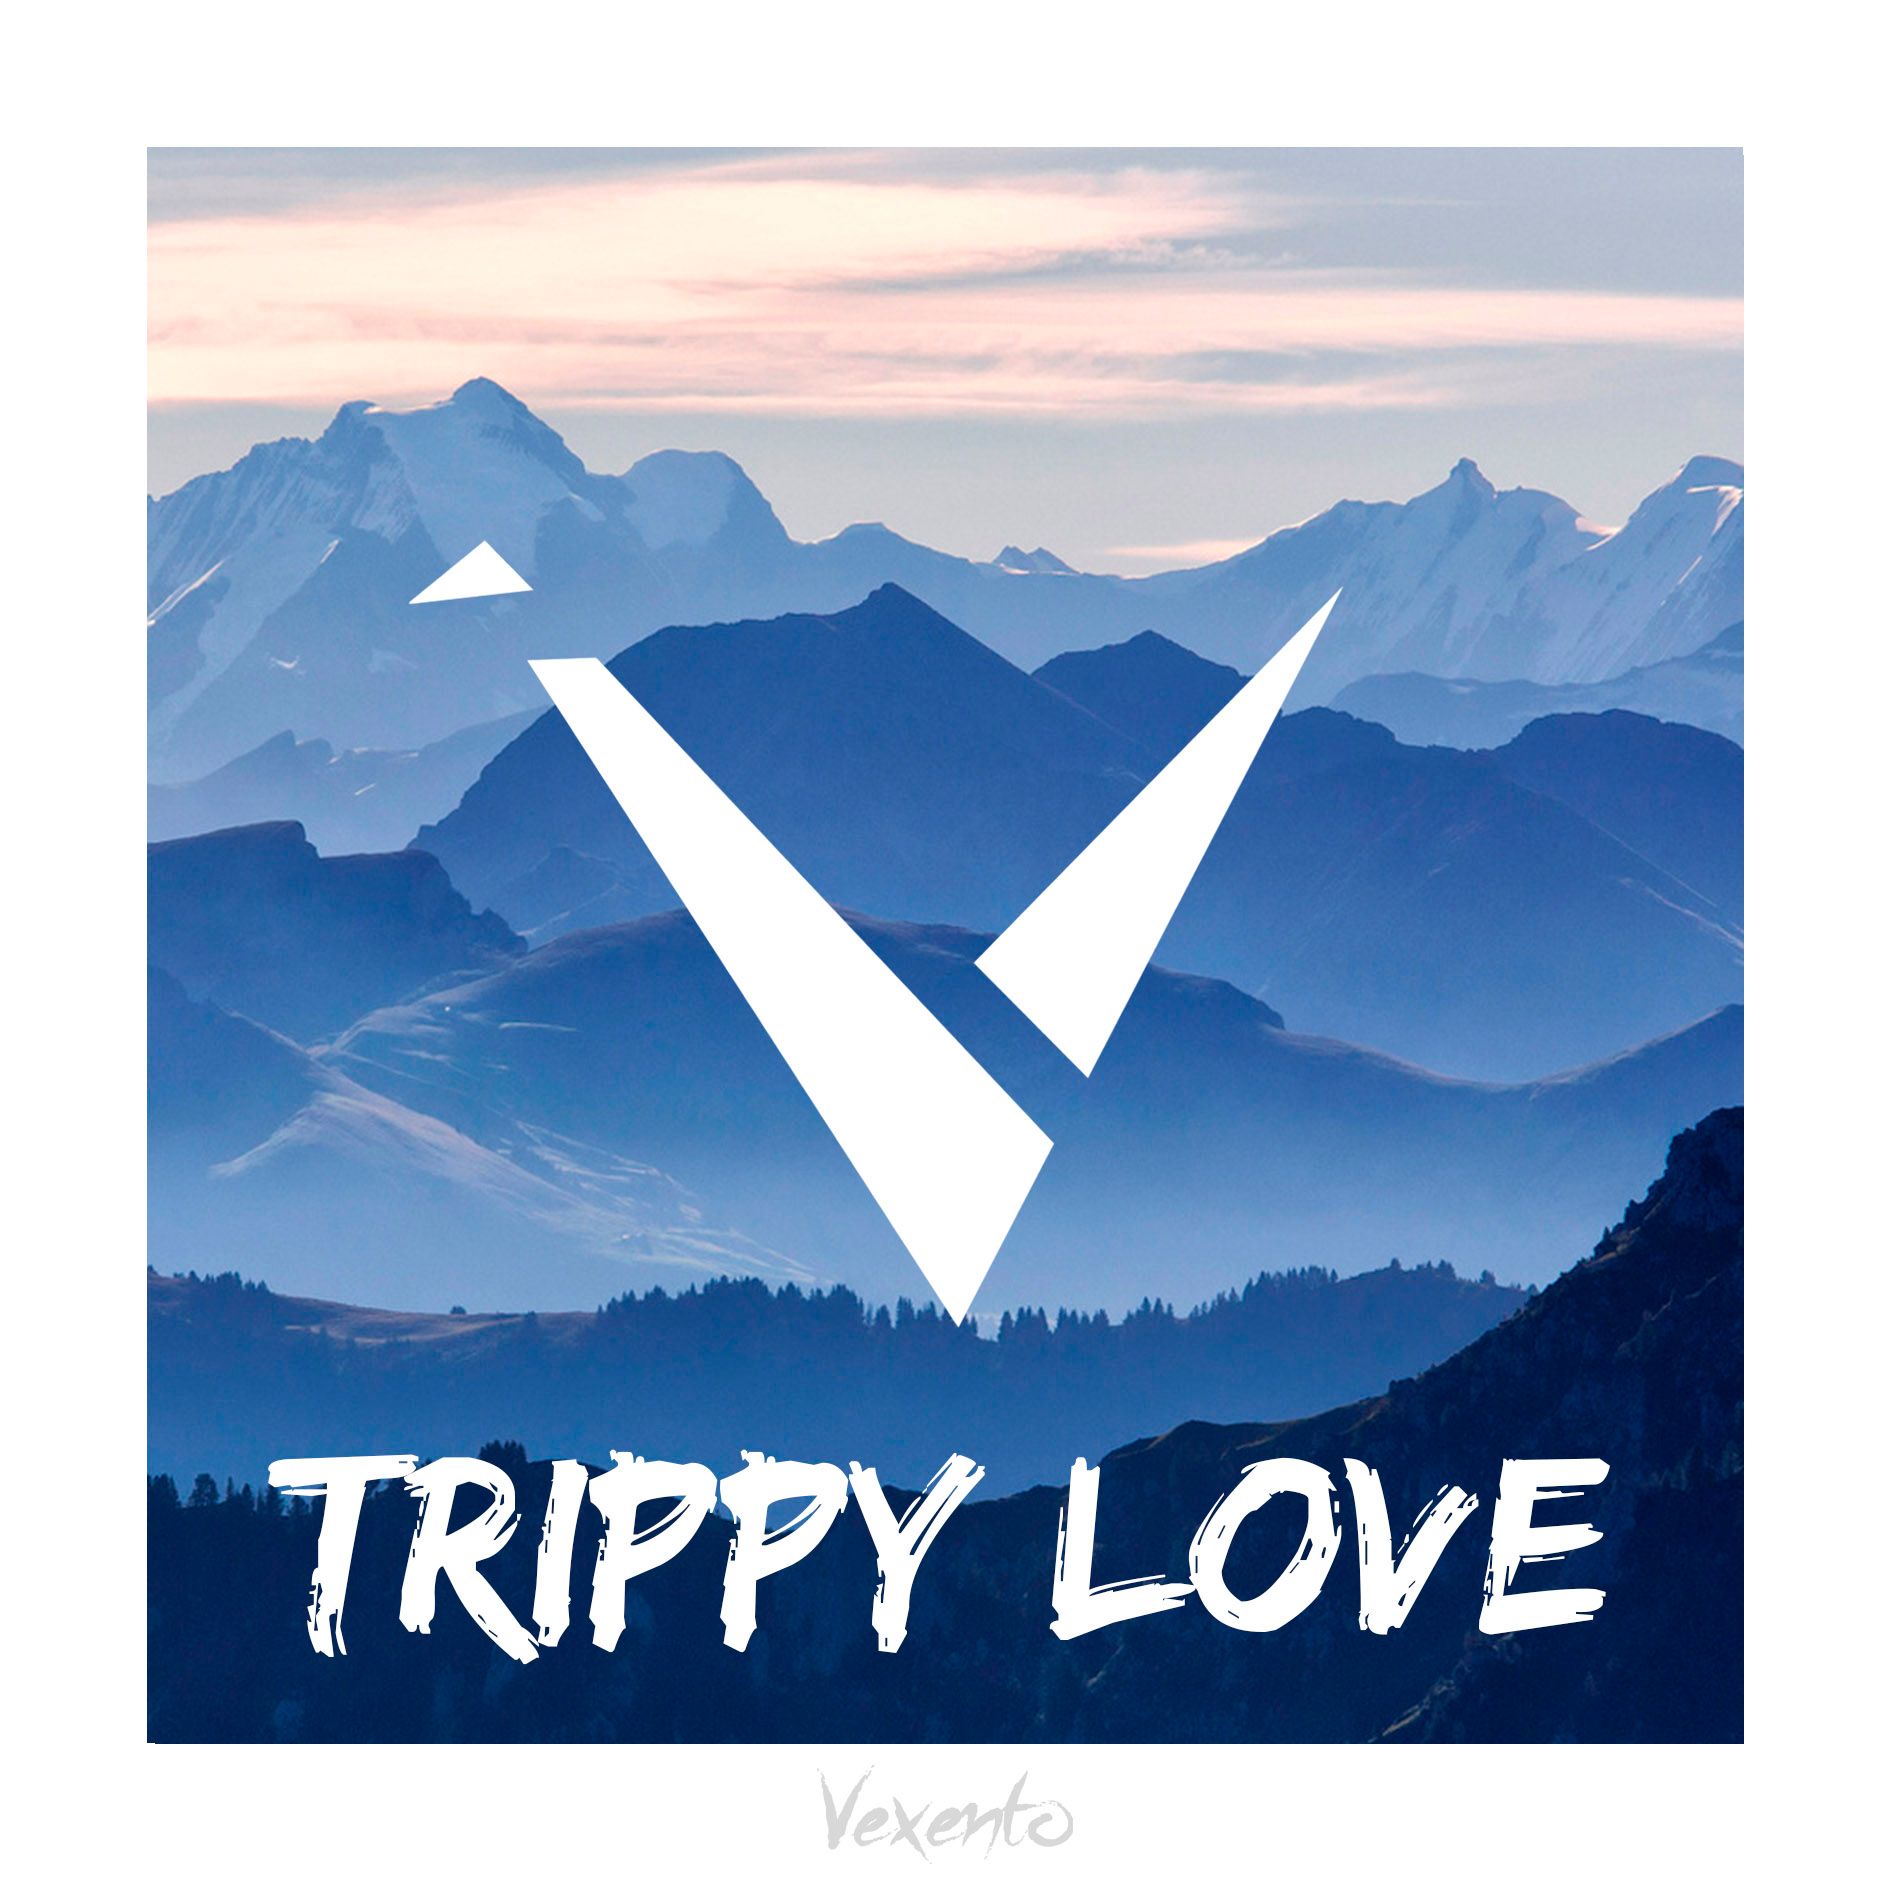 Sækja Vexento - Trippy Love